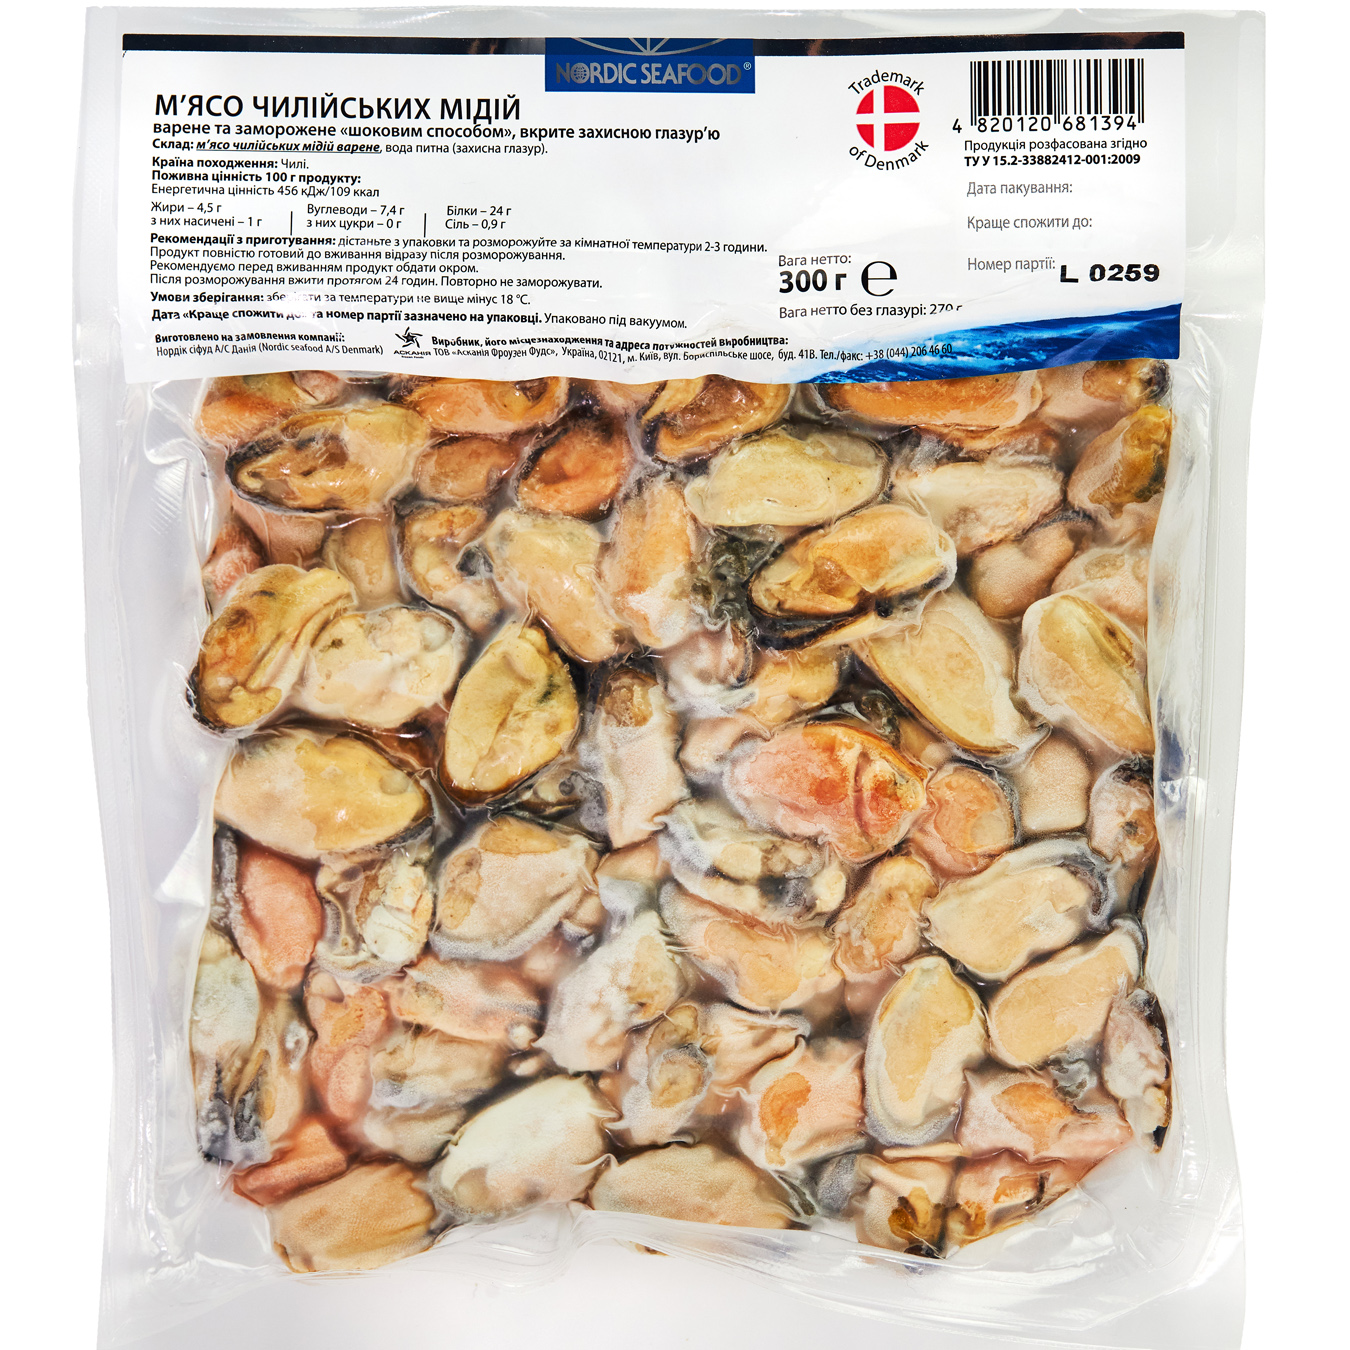 Мідії Nordic Seafood чилійські варено-морожені 300г